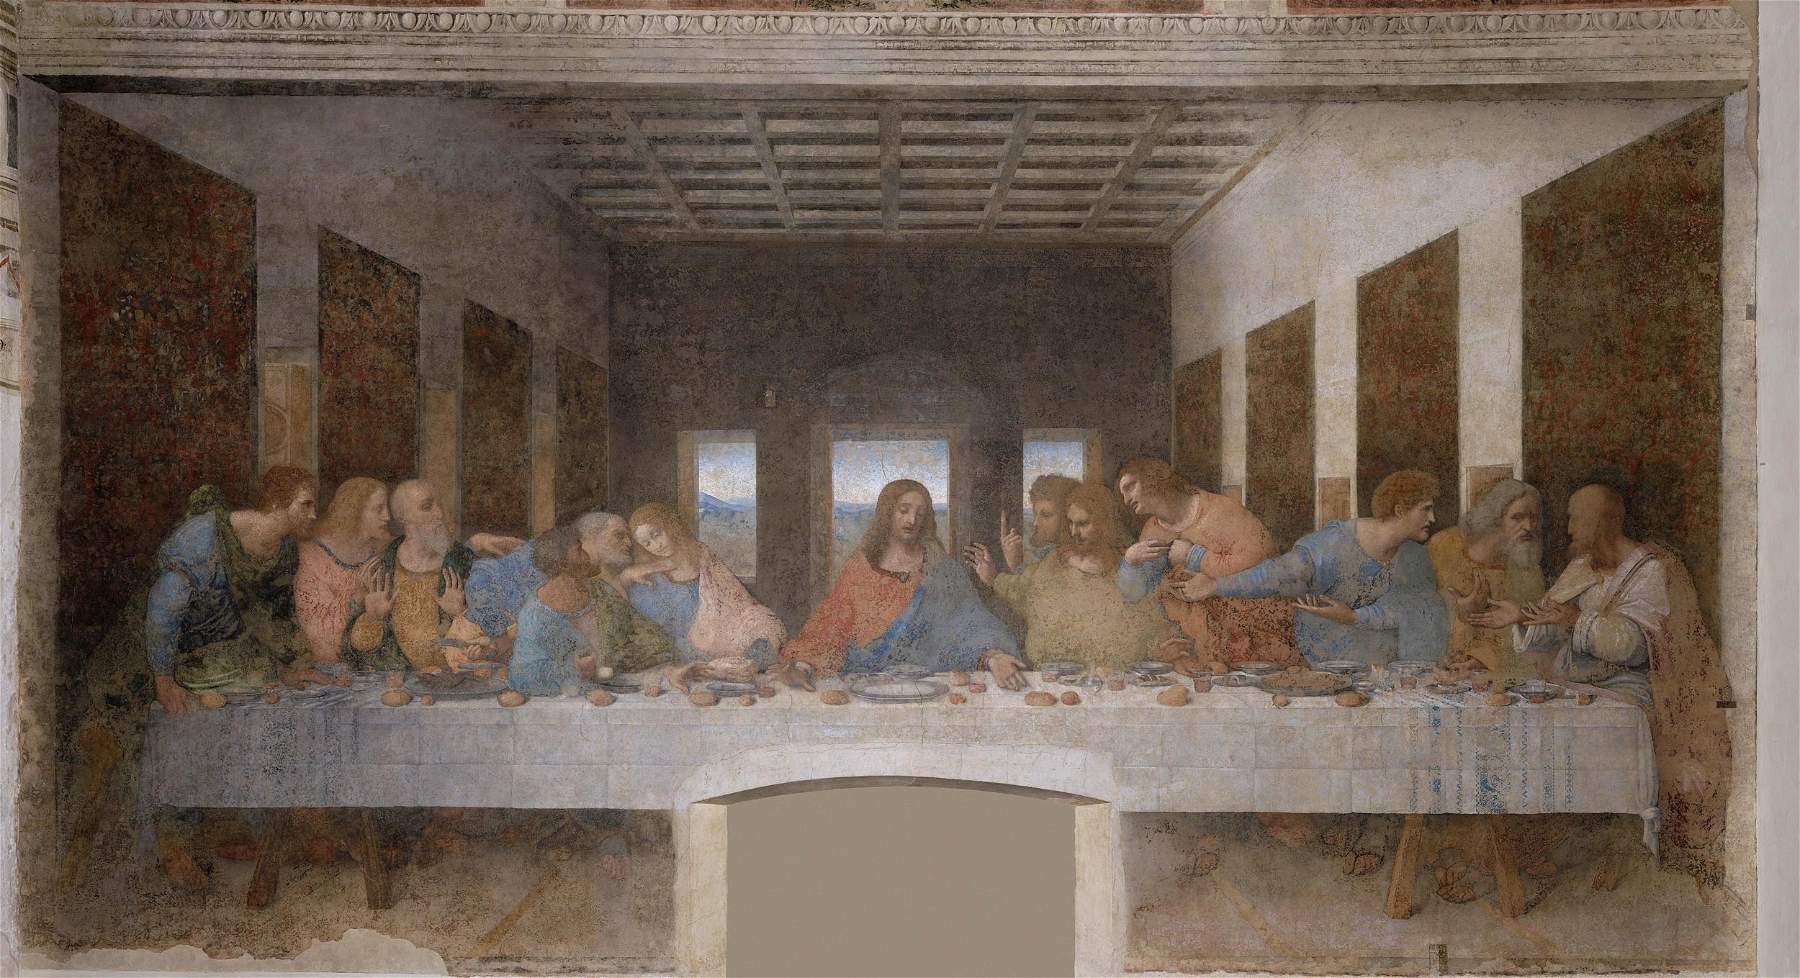 Il percorso di visita al Cenacolo di Leonardo si rinnoverà grazie a importante donazione 